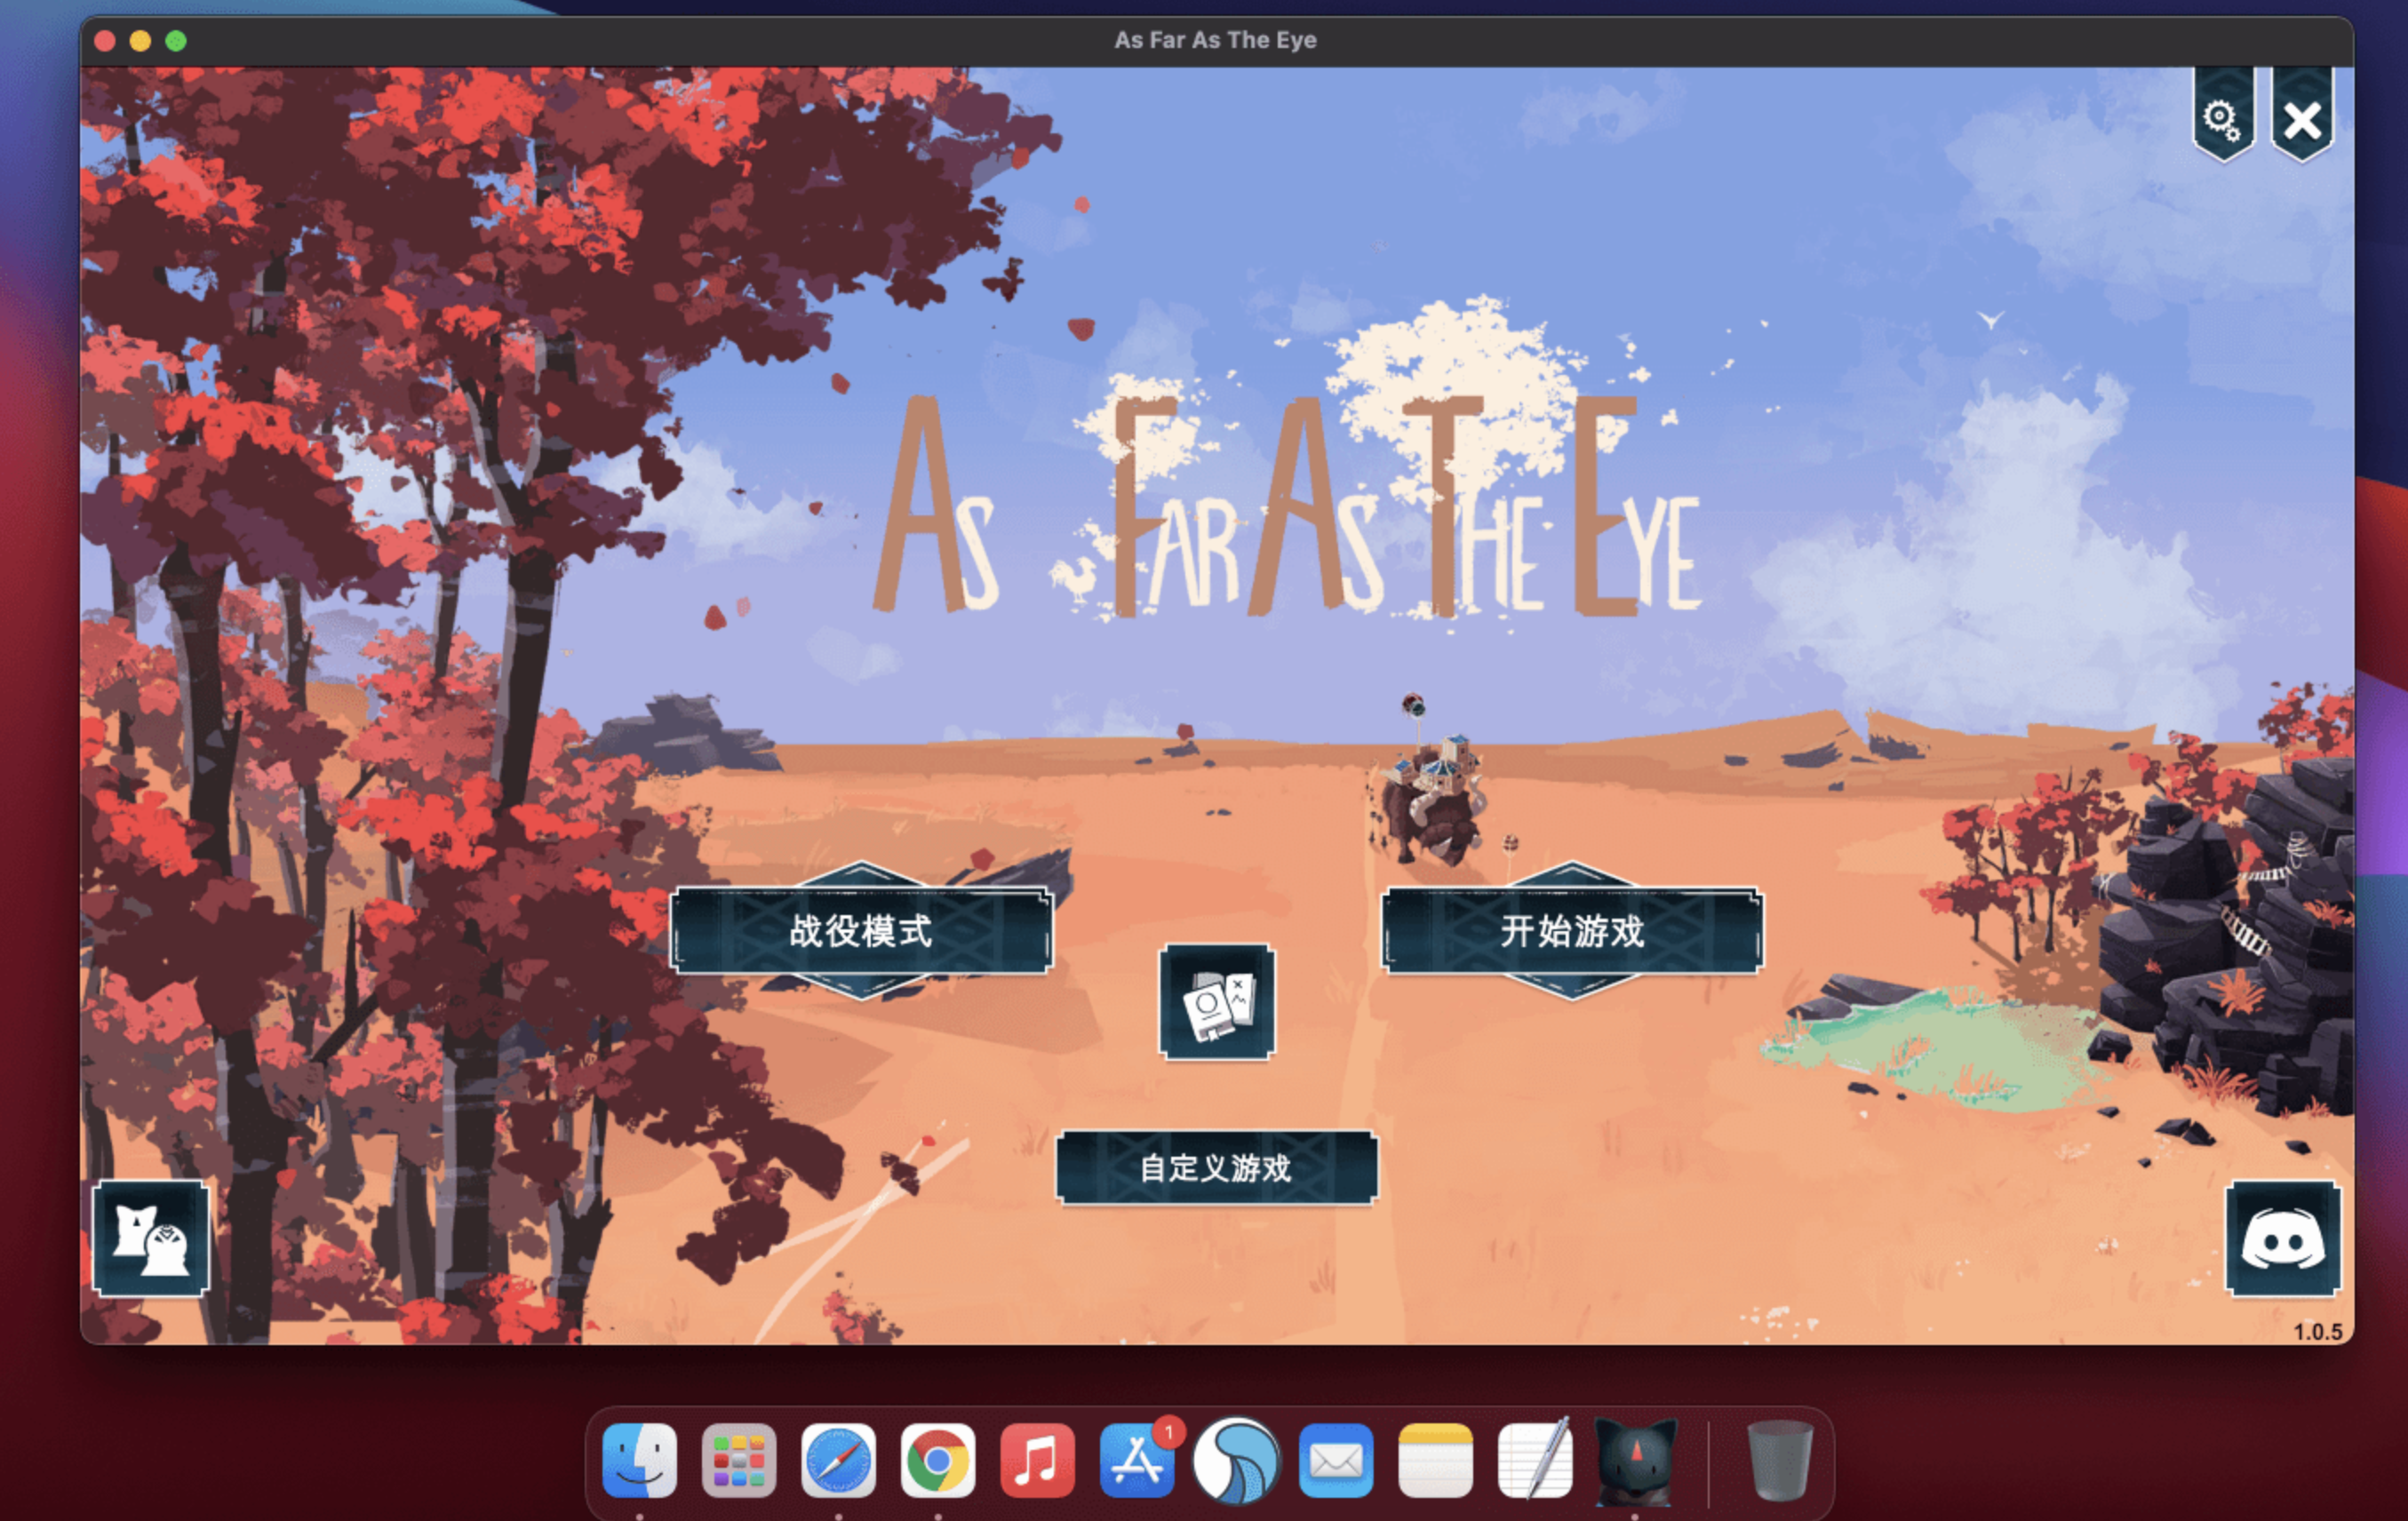 四海旅人 for Mac v1.1.1a As Far As The Eye 中文原生版